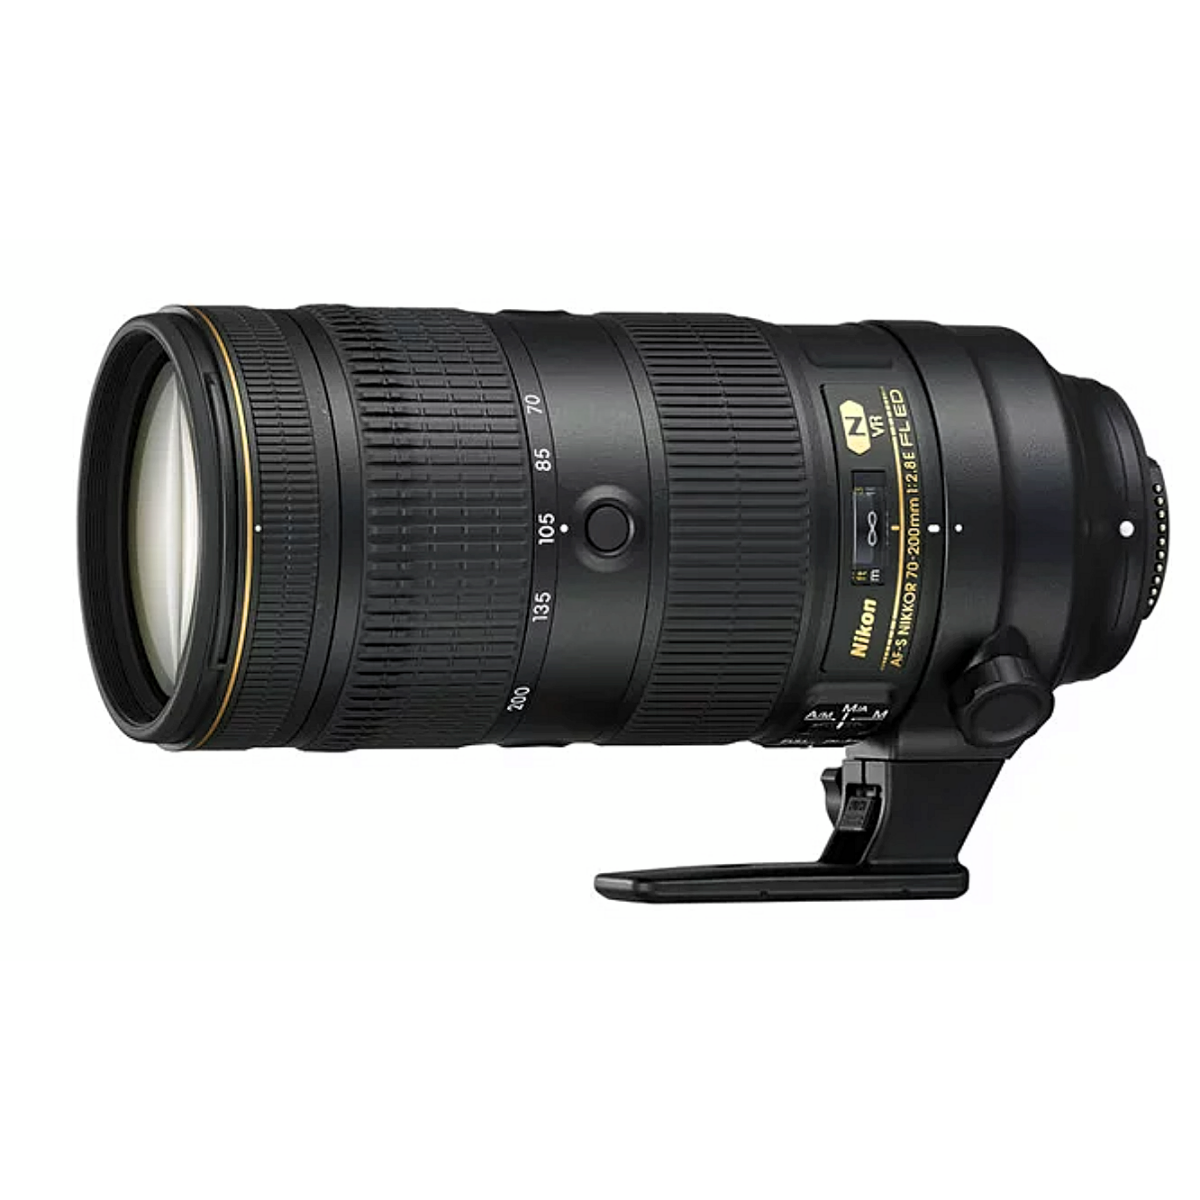 A Nikon AF-S NIKKOR 70-200mm f2.8E FL ED VR lens